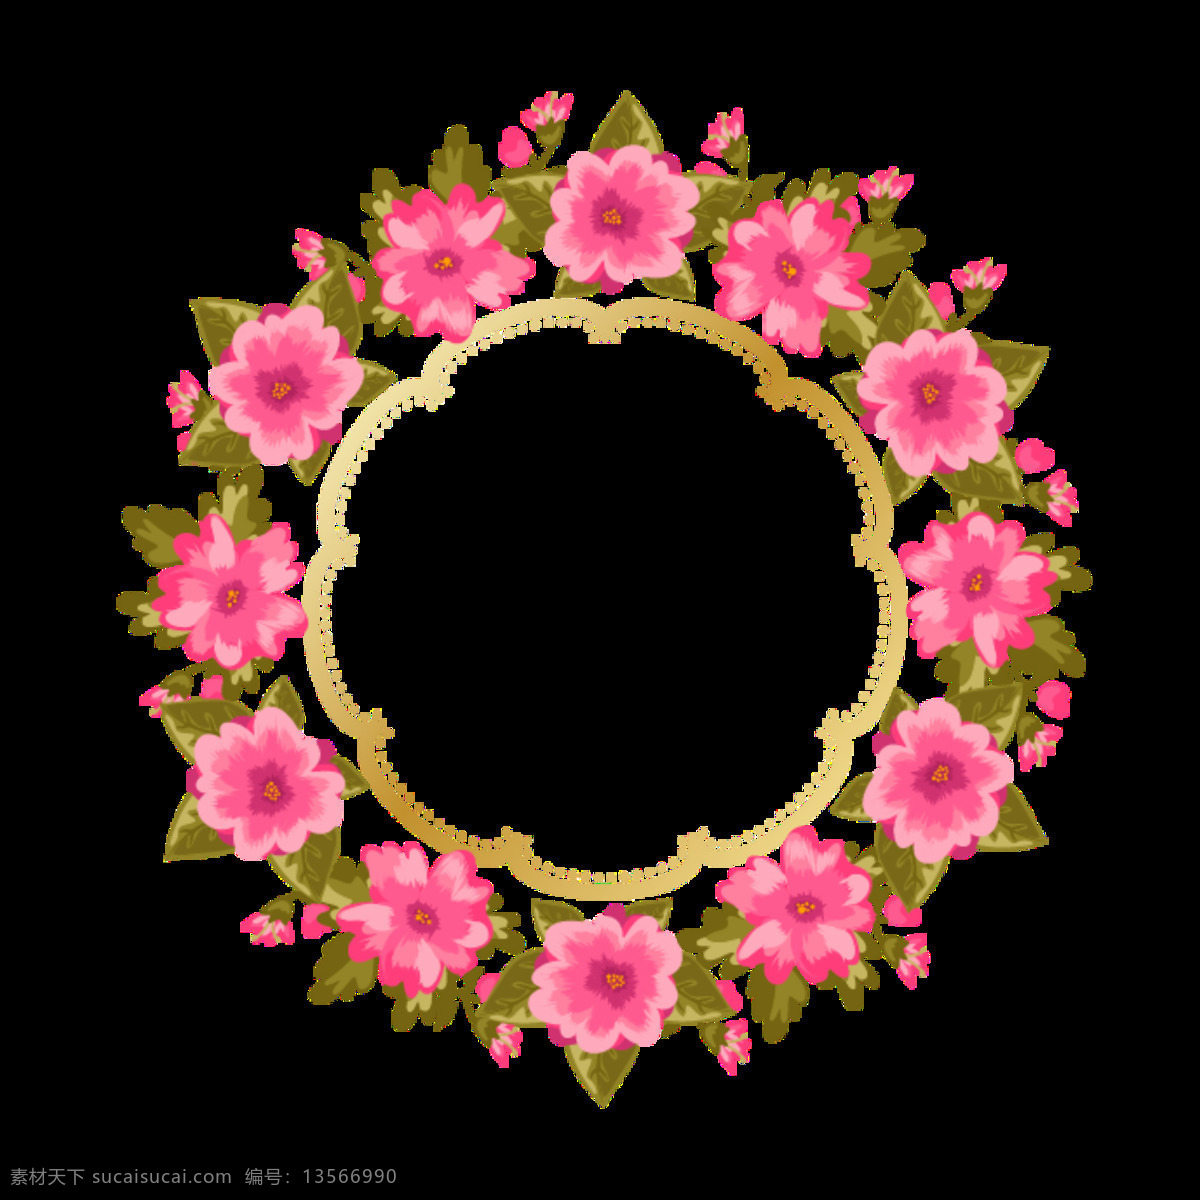 美丽 明媚 淡 粉色 花朵 手绘 花环 装饰 元素 边框 春天 淡粉色花朵 淡雅 绿叶 手绘小清新 圆形